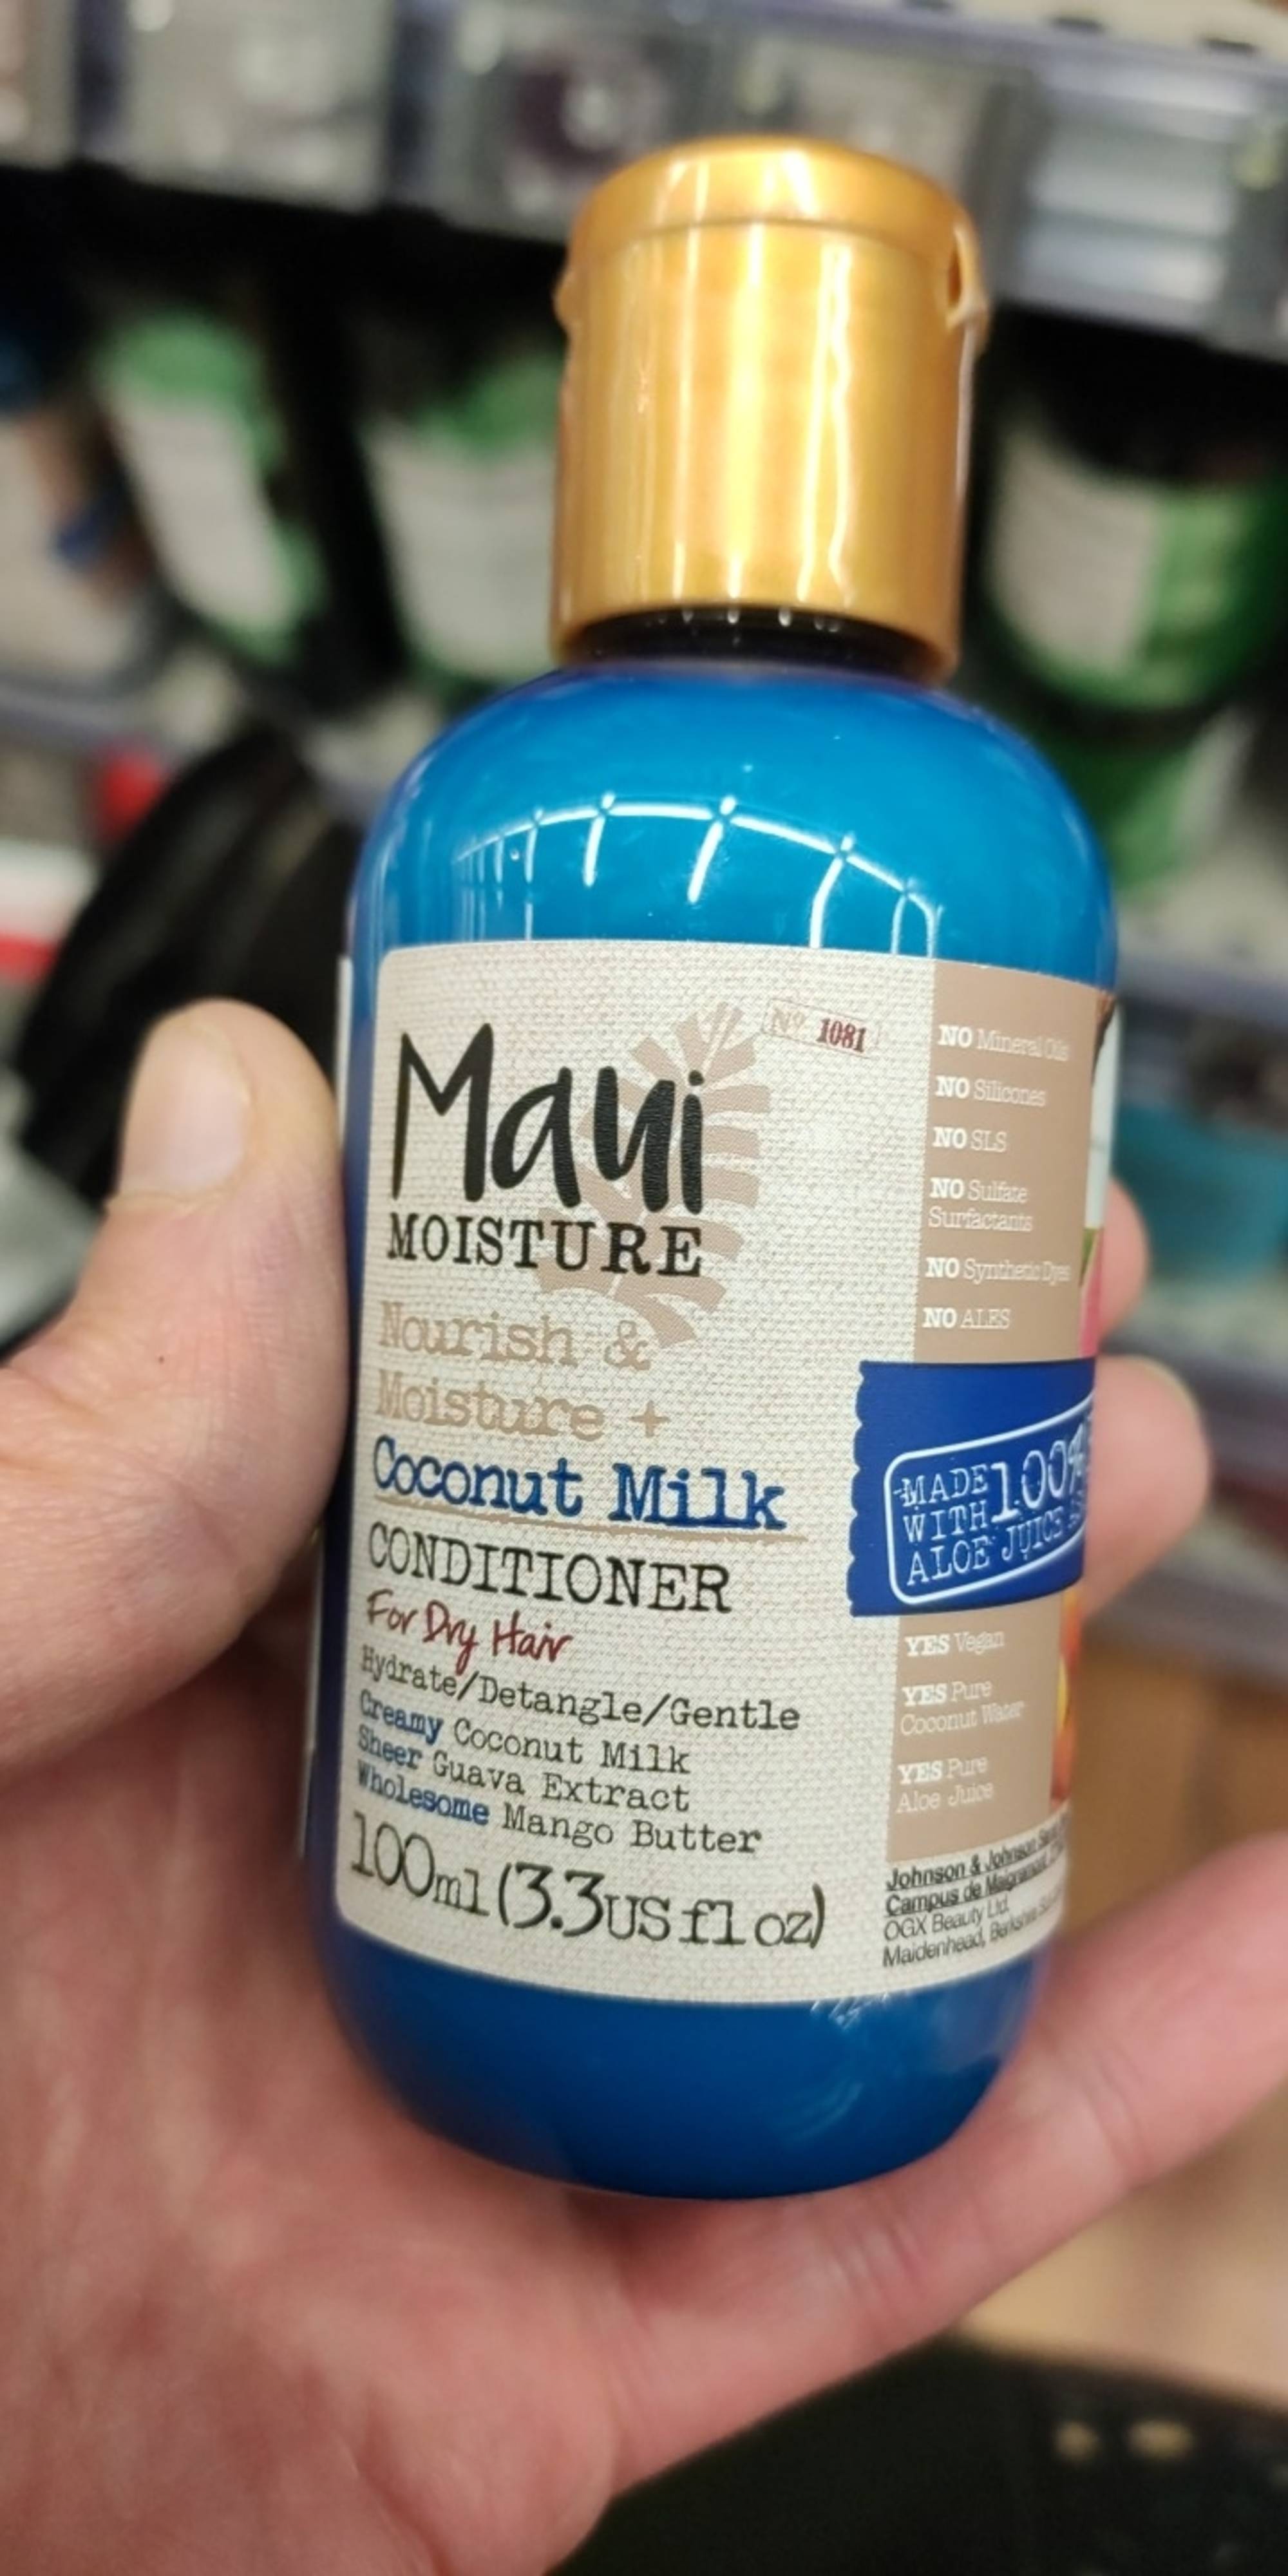 MAUI MOISTURE - Coconut milk - Conditioner